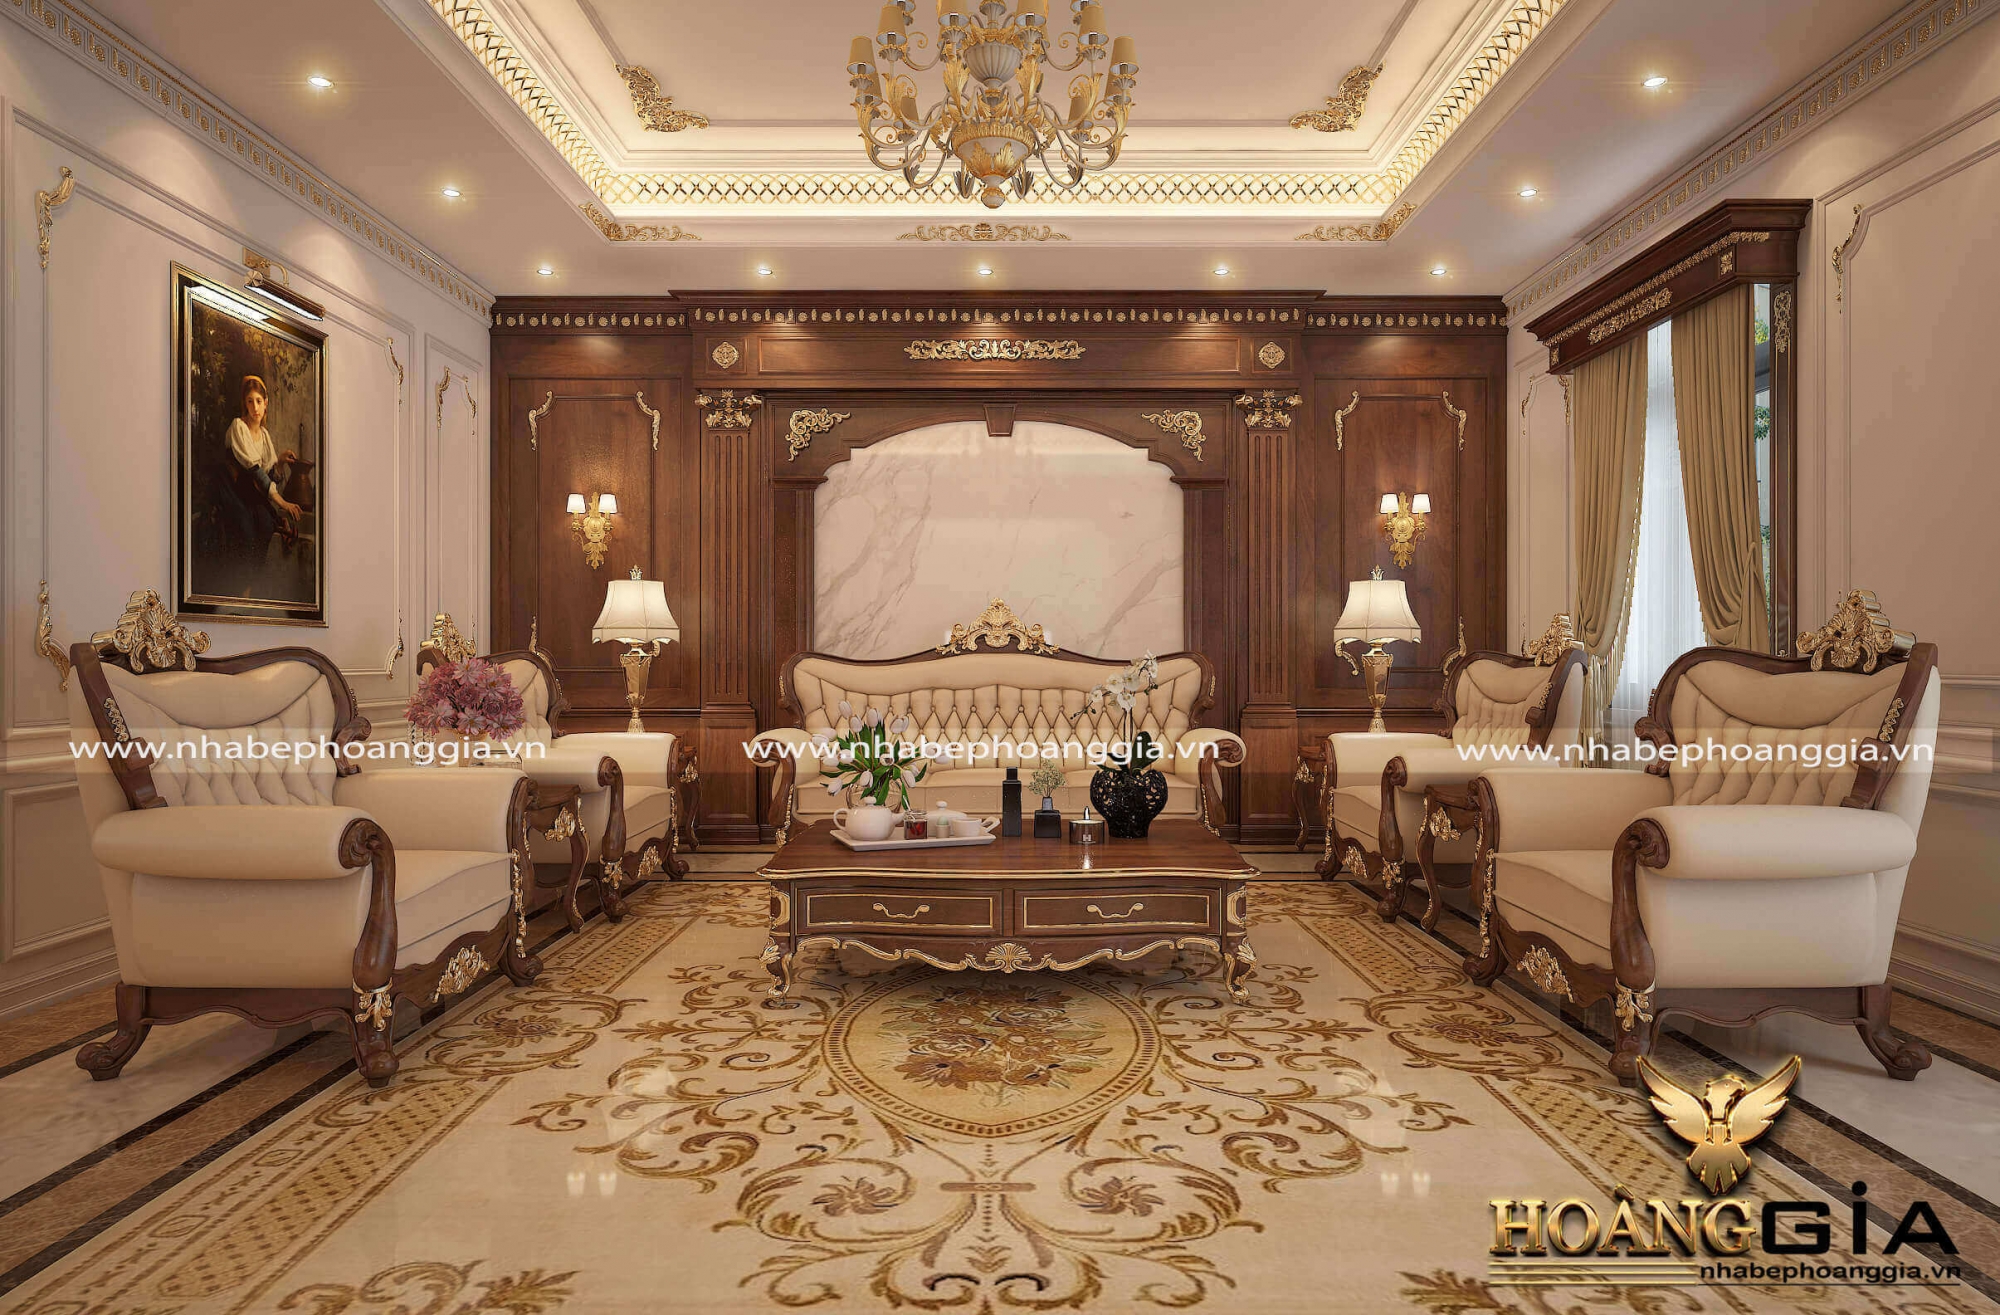 Dự án thiết kế nội thất phòng khách mà Nhà Bếp Hoàng Gia thực hiện ở Quảng Ninh